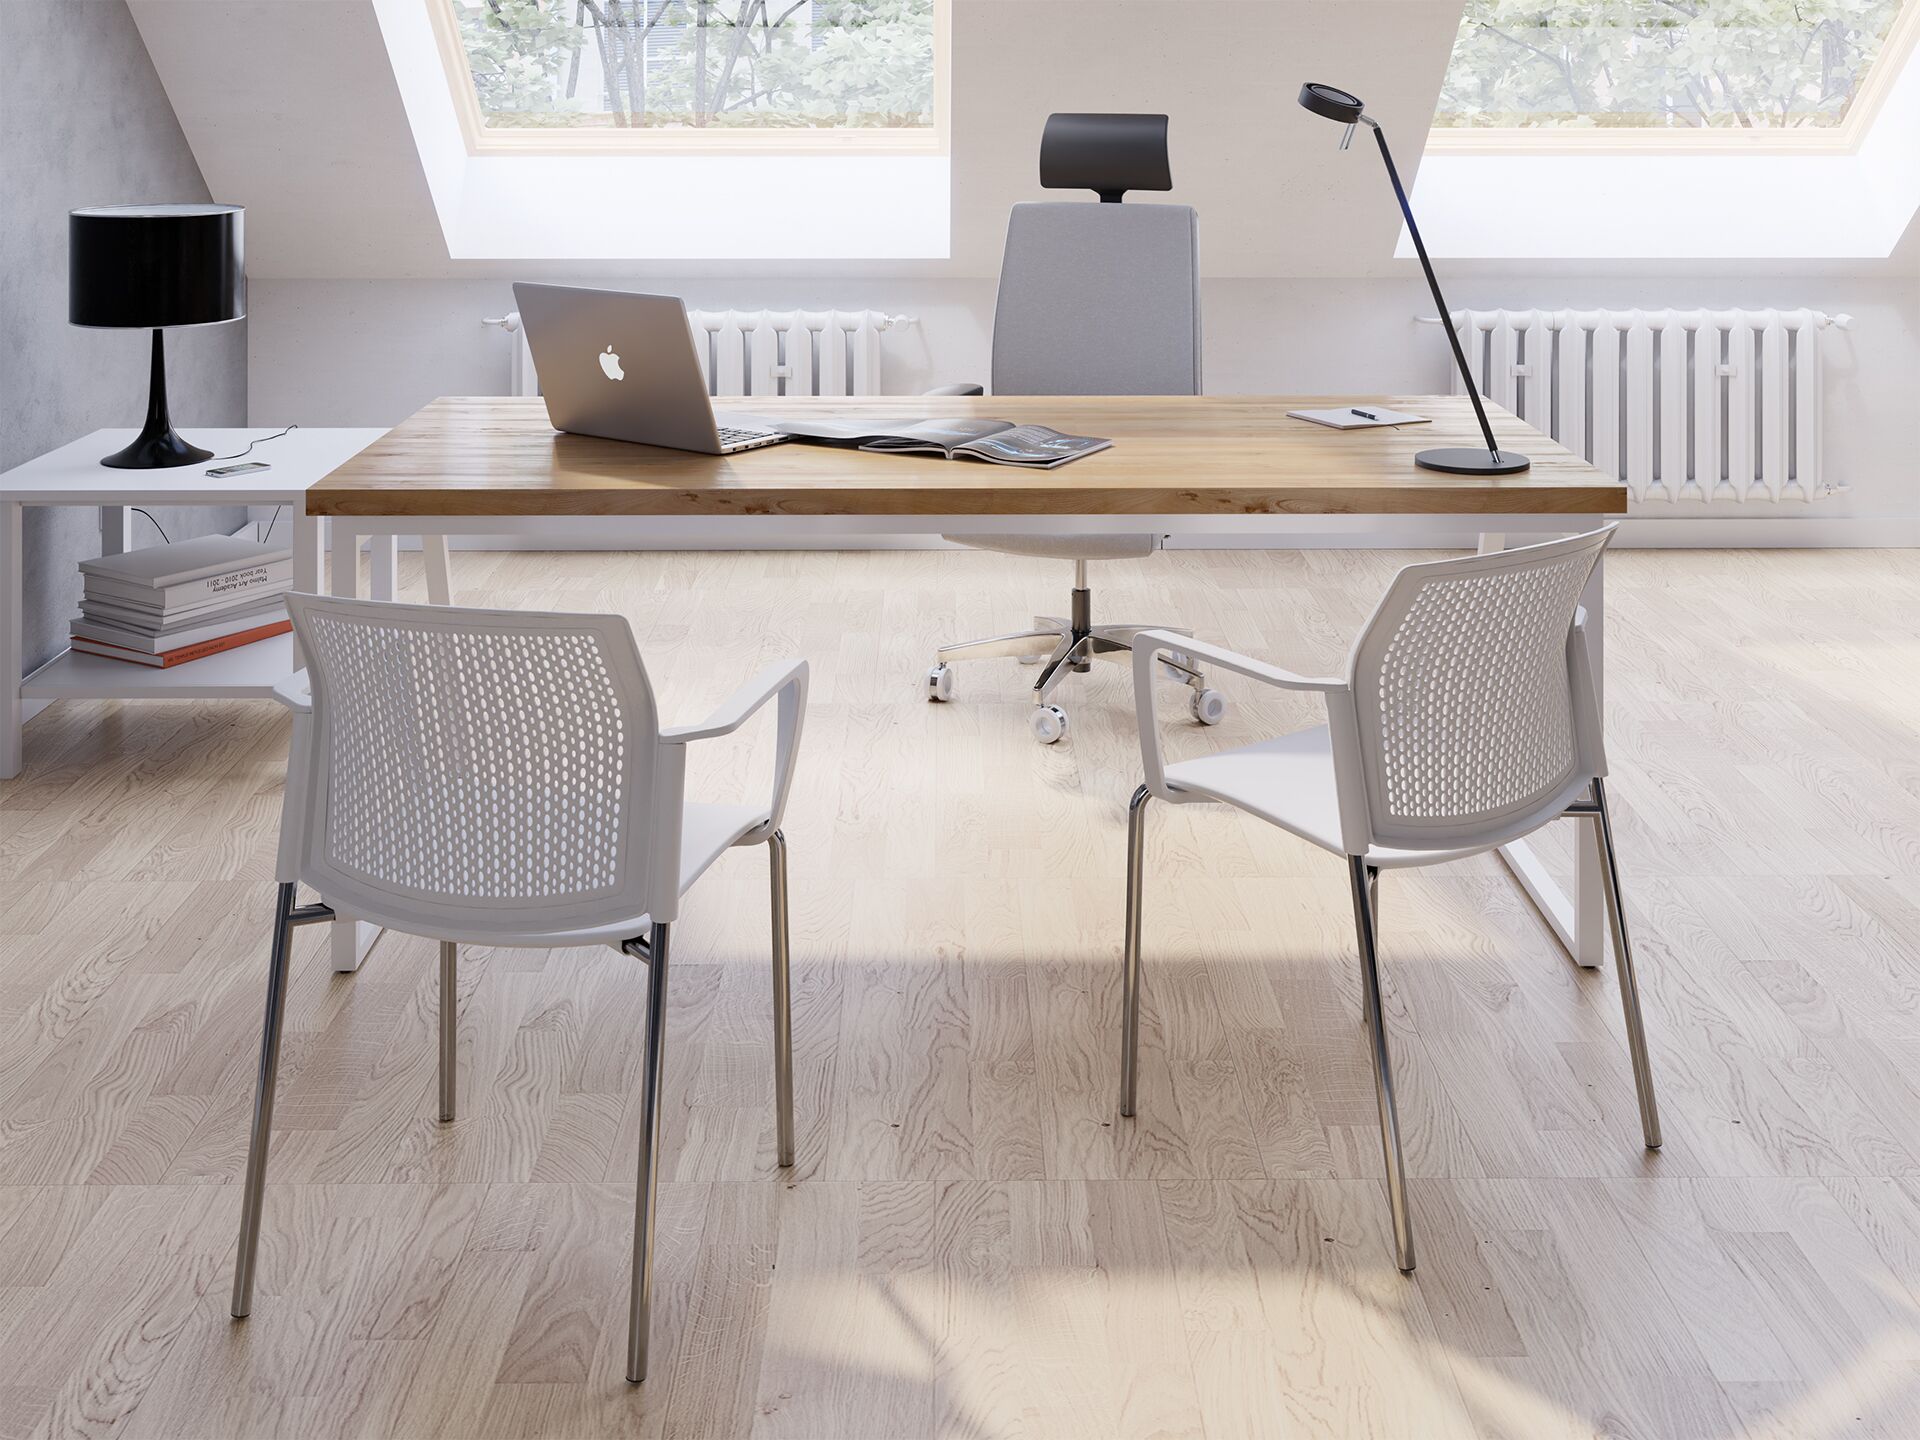 Fotel biurowy metalowy z białym siedziskiem stojący przy drewnianym biurku na którym jest laptop przed którym stoją dwa białe krzesła